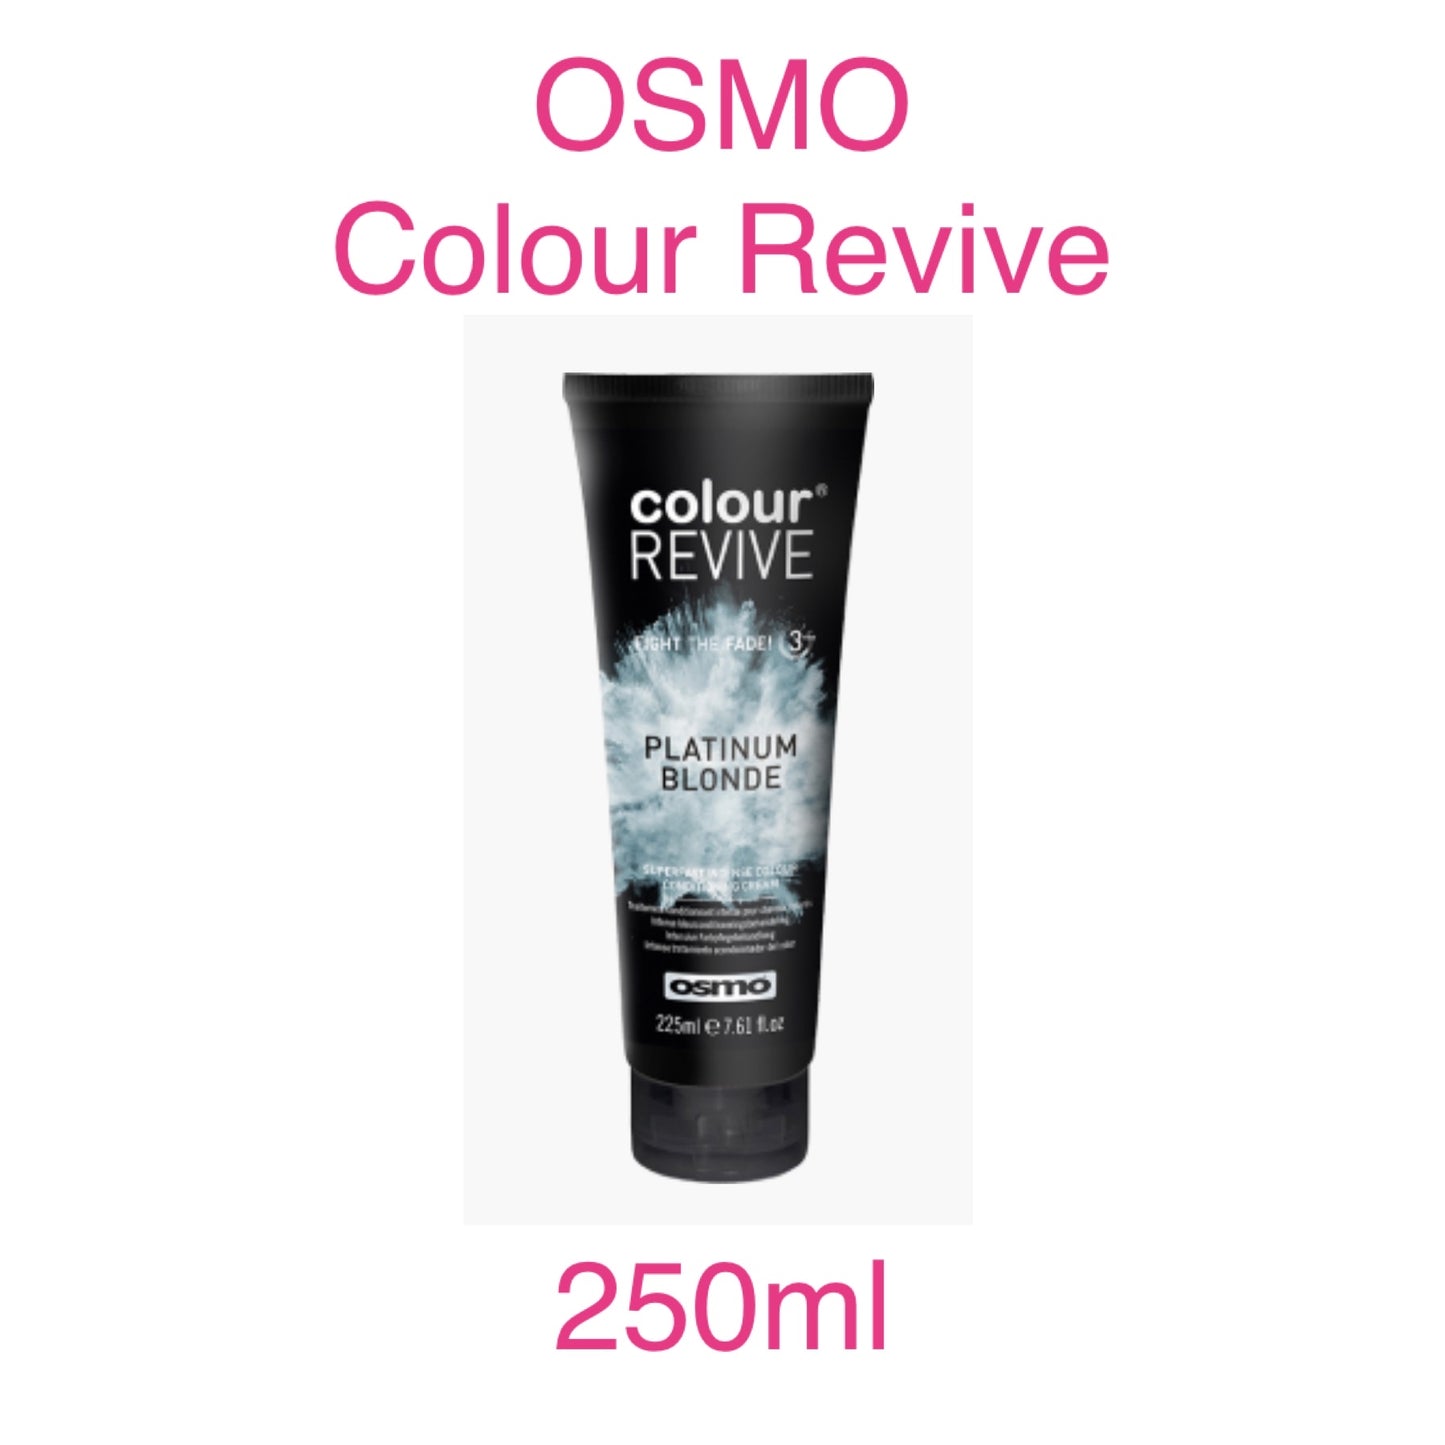 OSMO -Colour Revive Conditioner 250ml